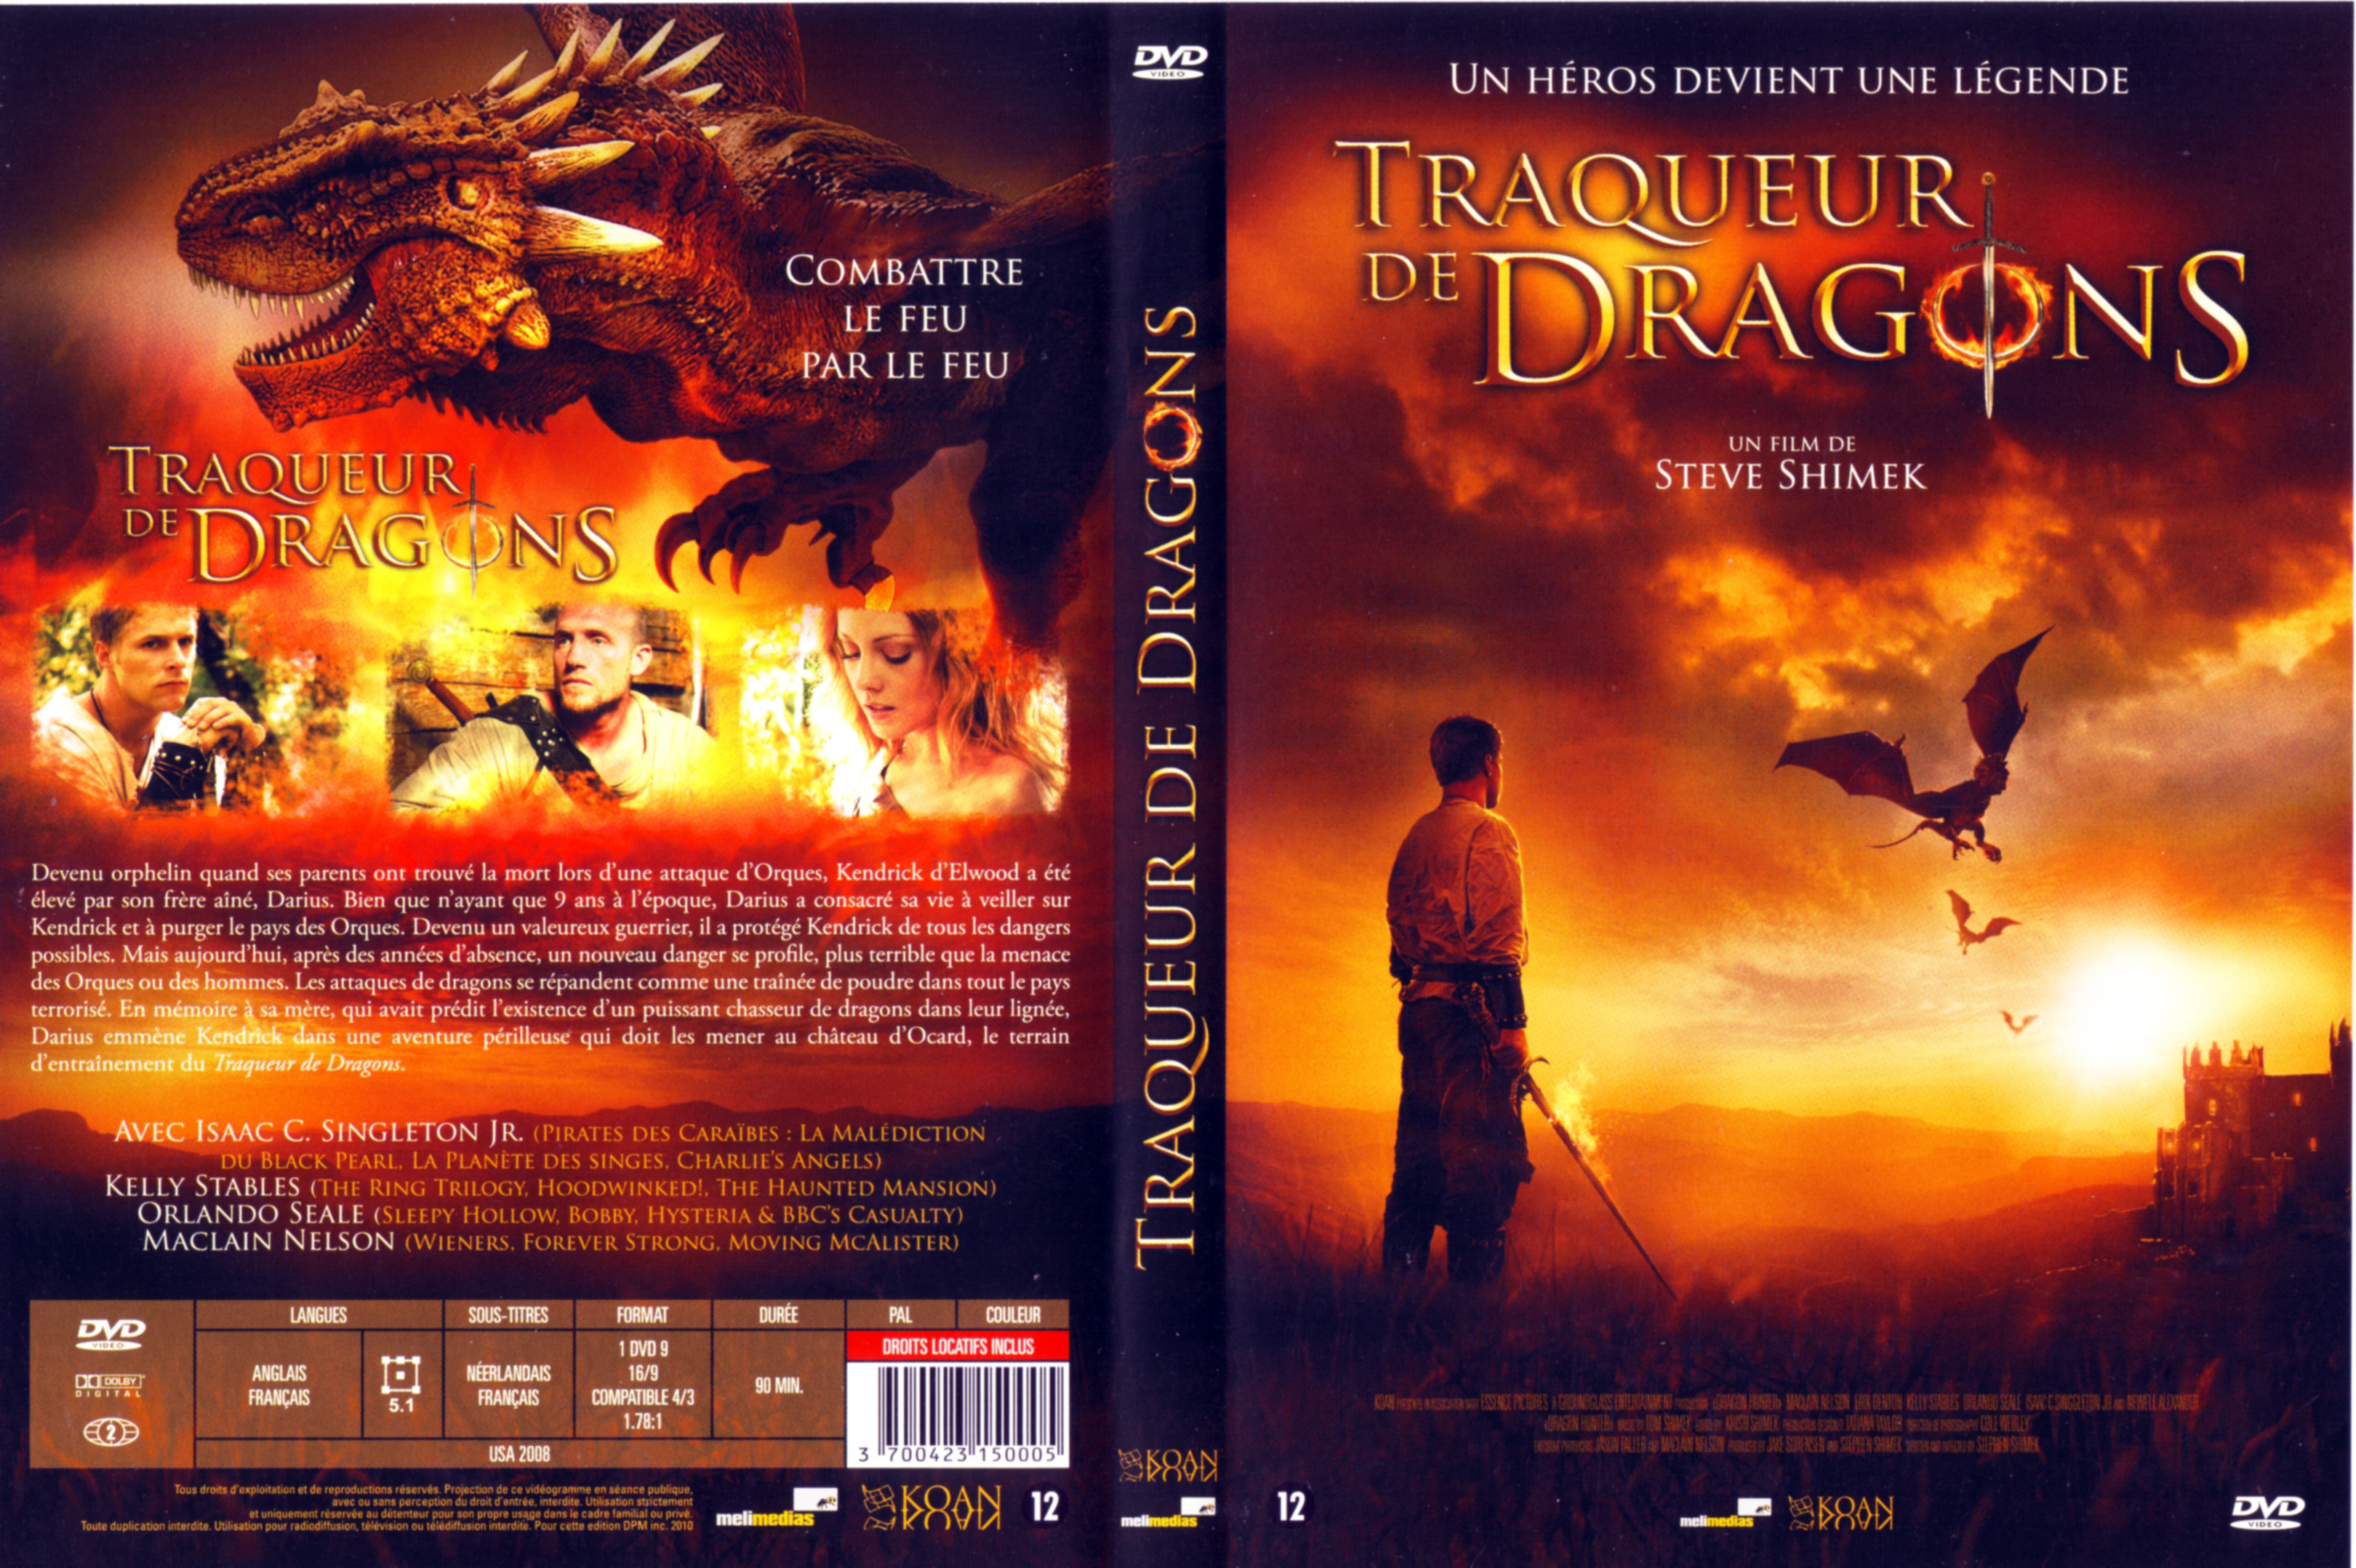 Jaquette DVD Traqueur de Dragons